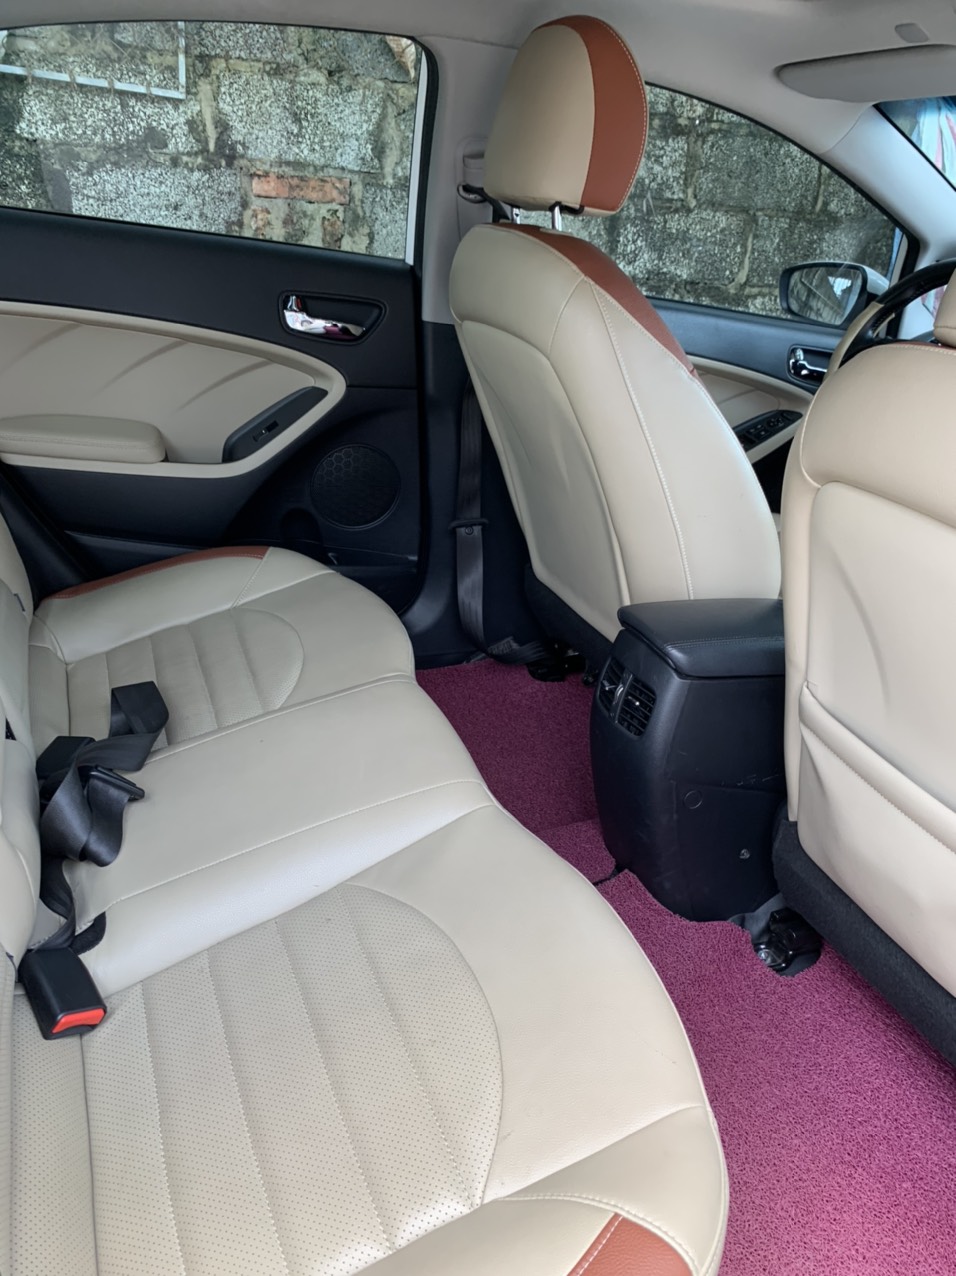 Chính chủ bán Xe Kia cerato đời cuối 2018 bản 1.6 số tự động 6 cấp ghế 2 màu. -2